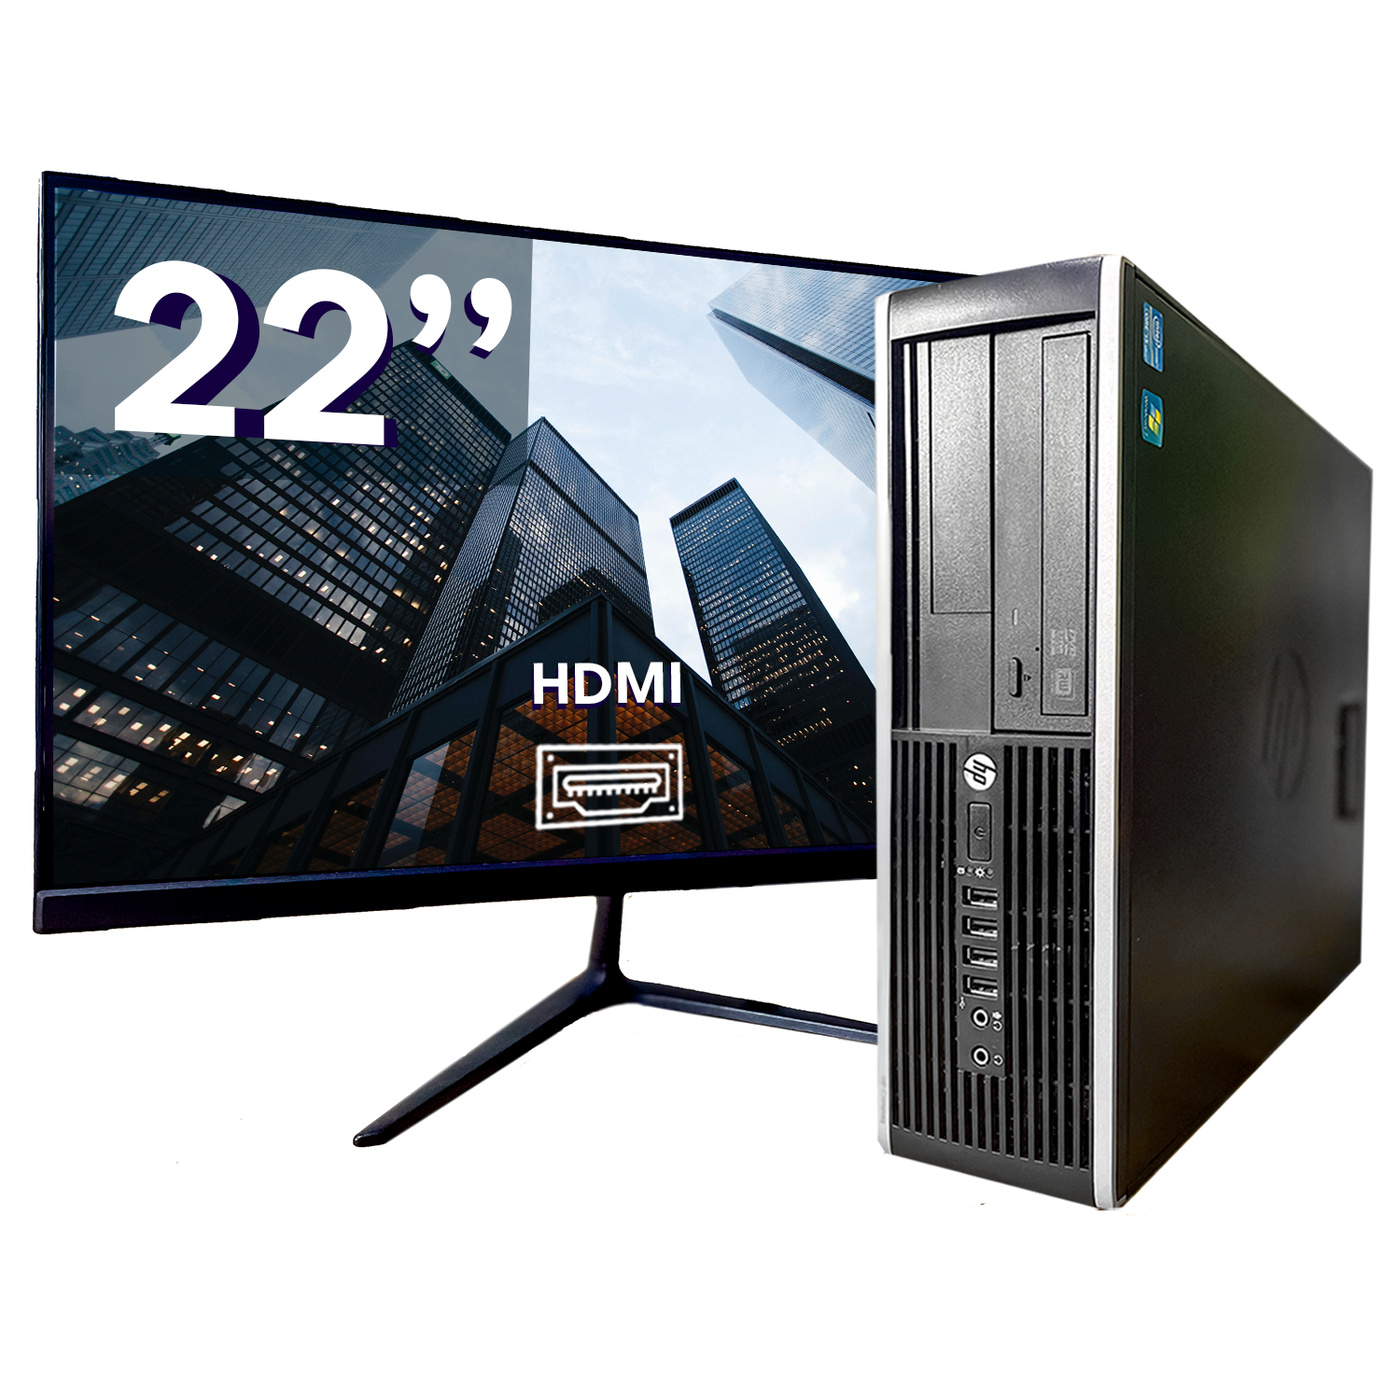 Pc Gamer Completo I5 8Gb Hd 1Tb Hdmi Placa De Video Monitor com o Melhor  Preço é no Zoom